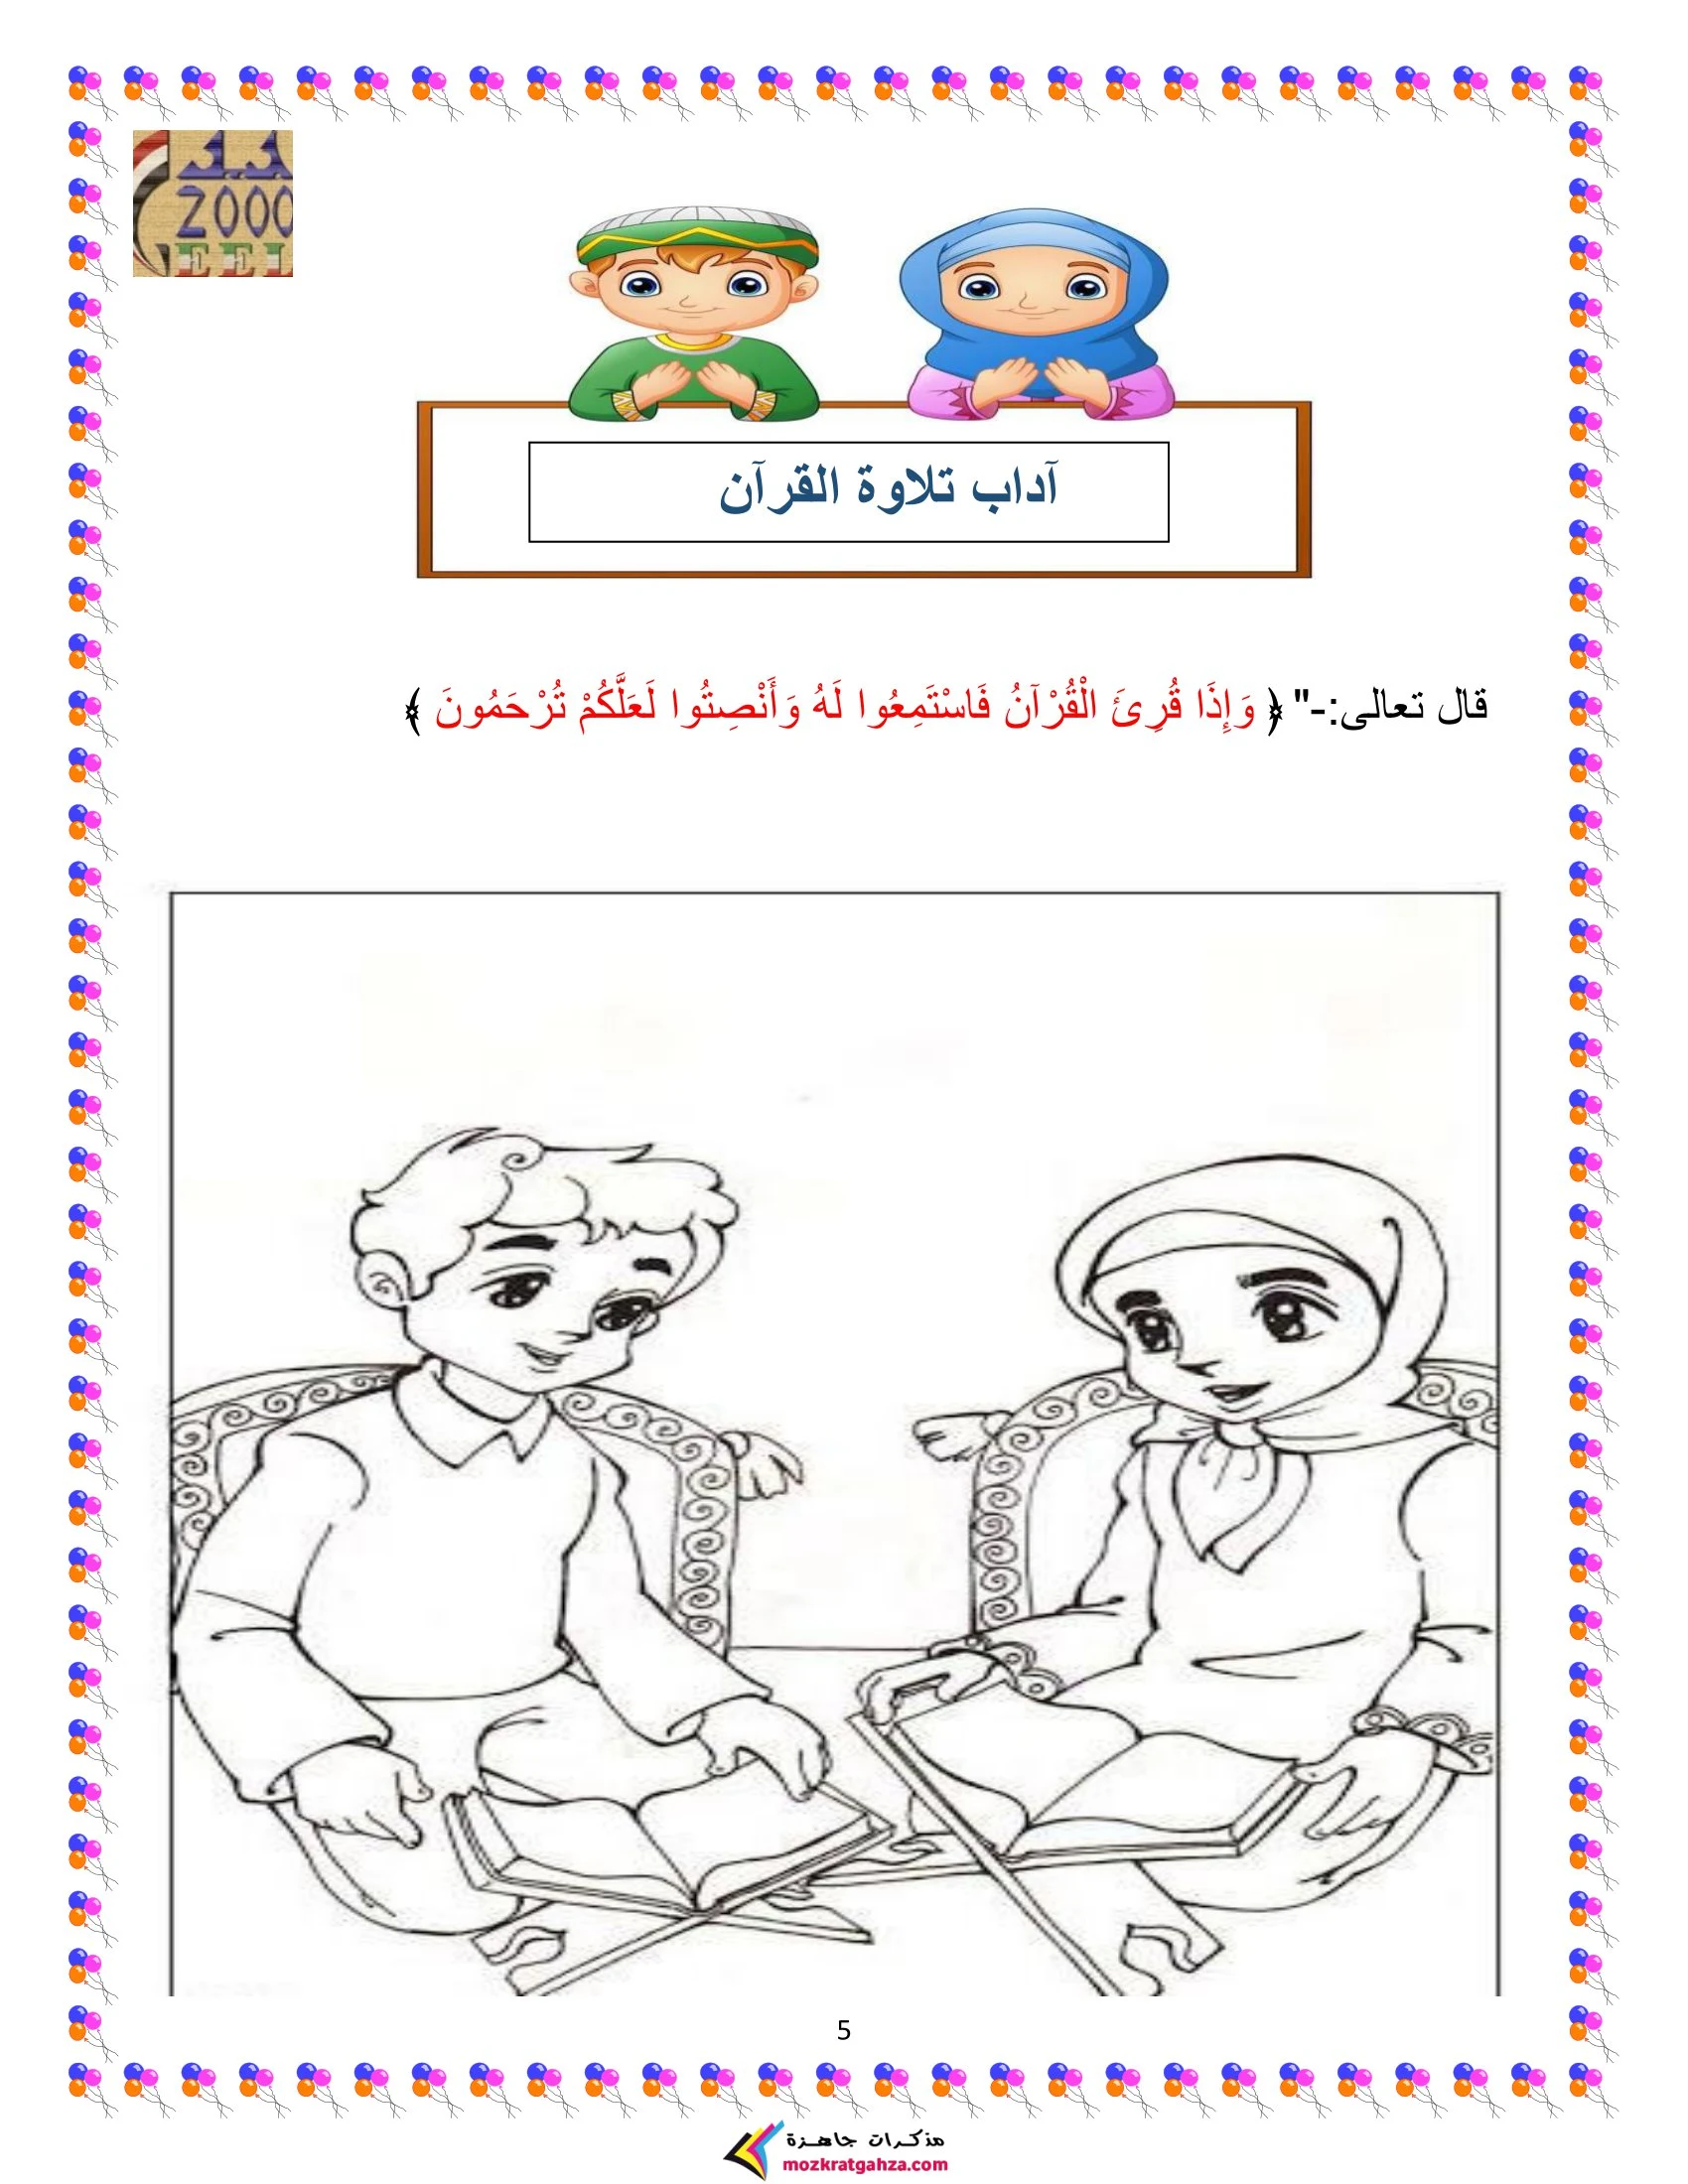 ملزمة التربية الدينية الإسلامية للمستوى الثاني الترم الأول pdf تحميل مباشر مجاني